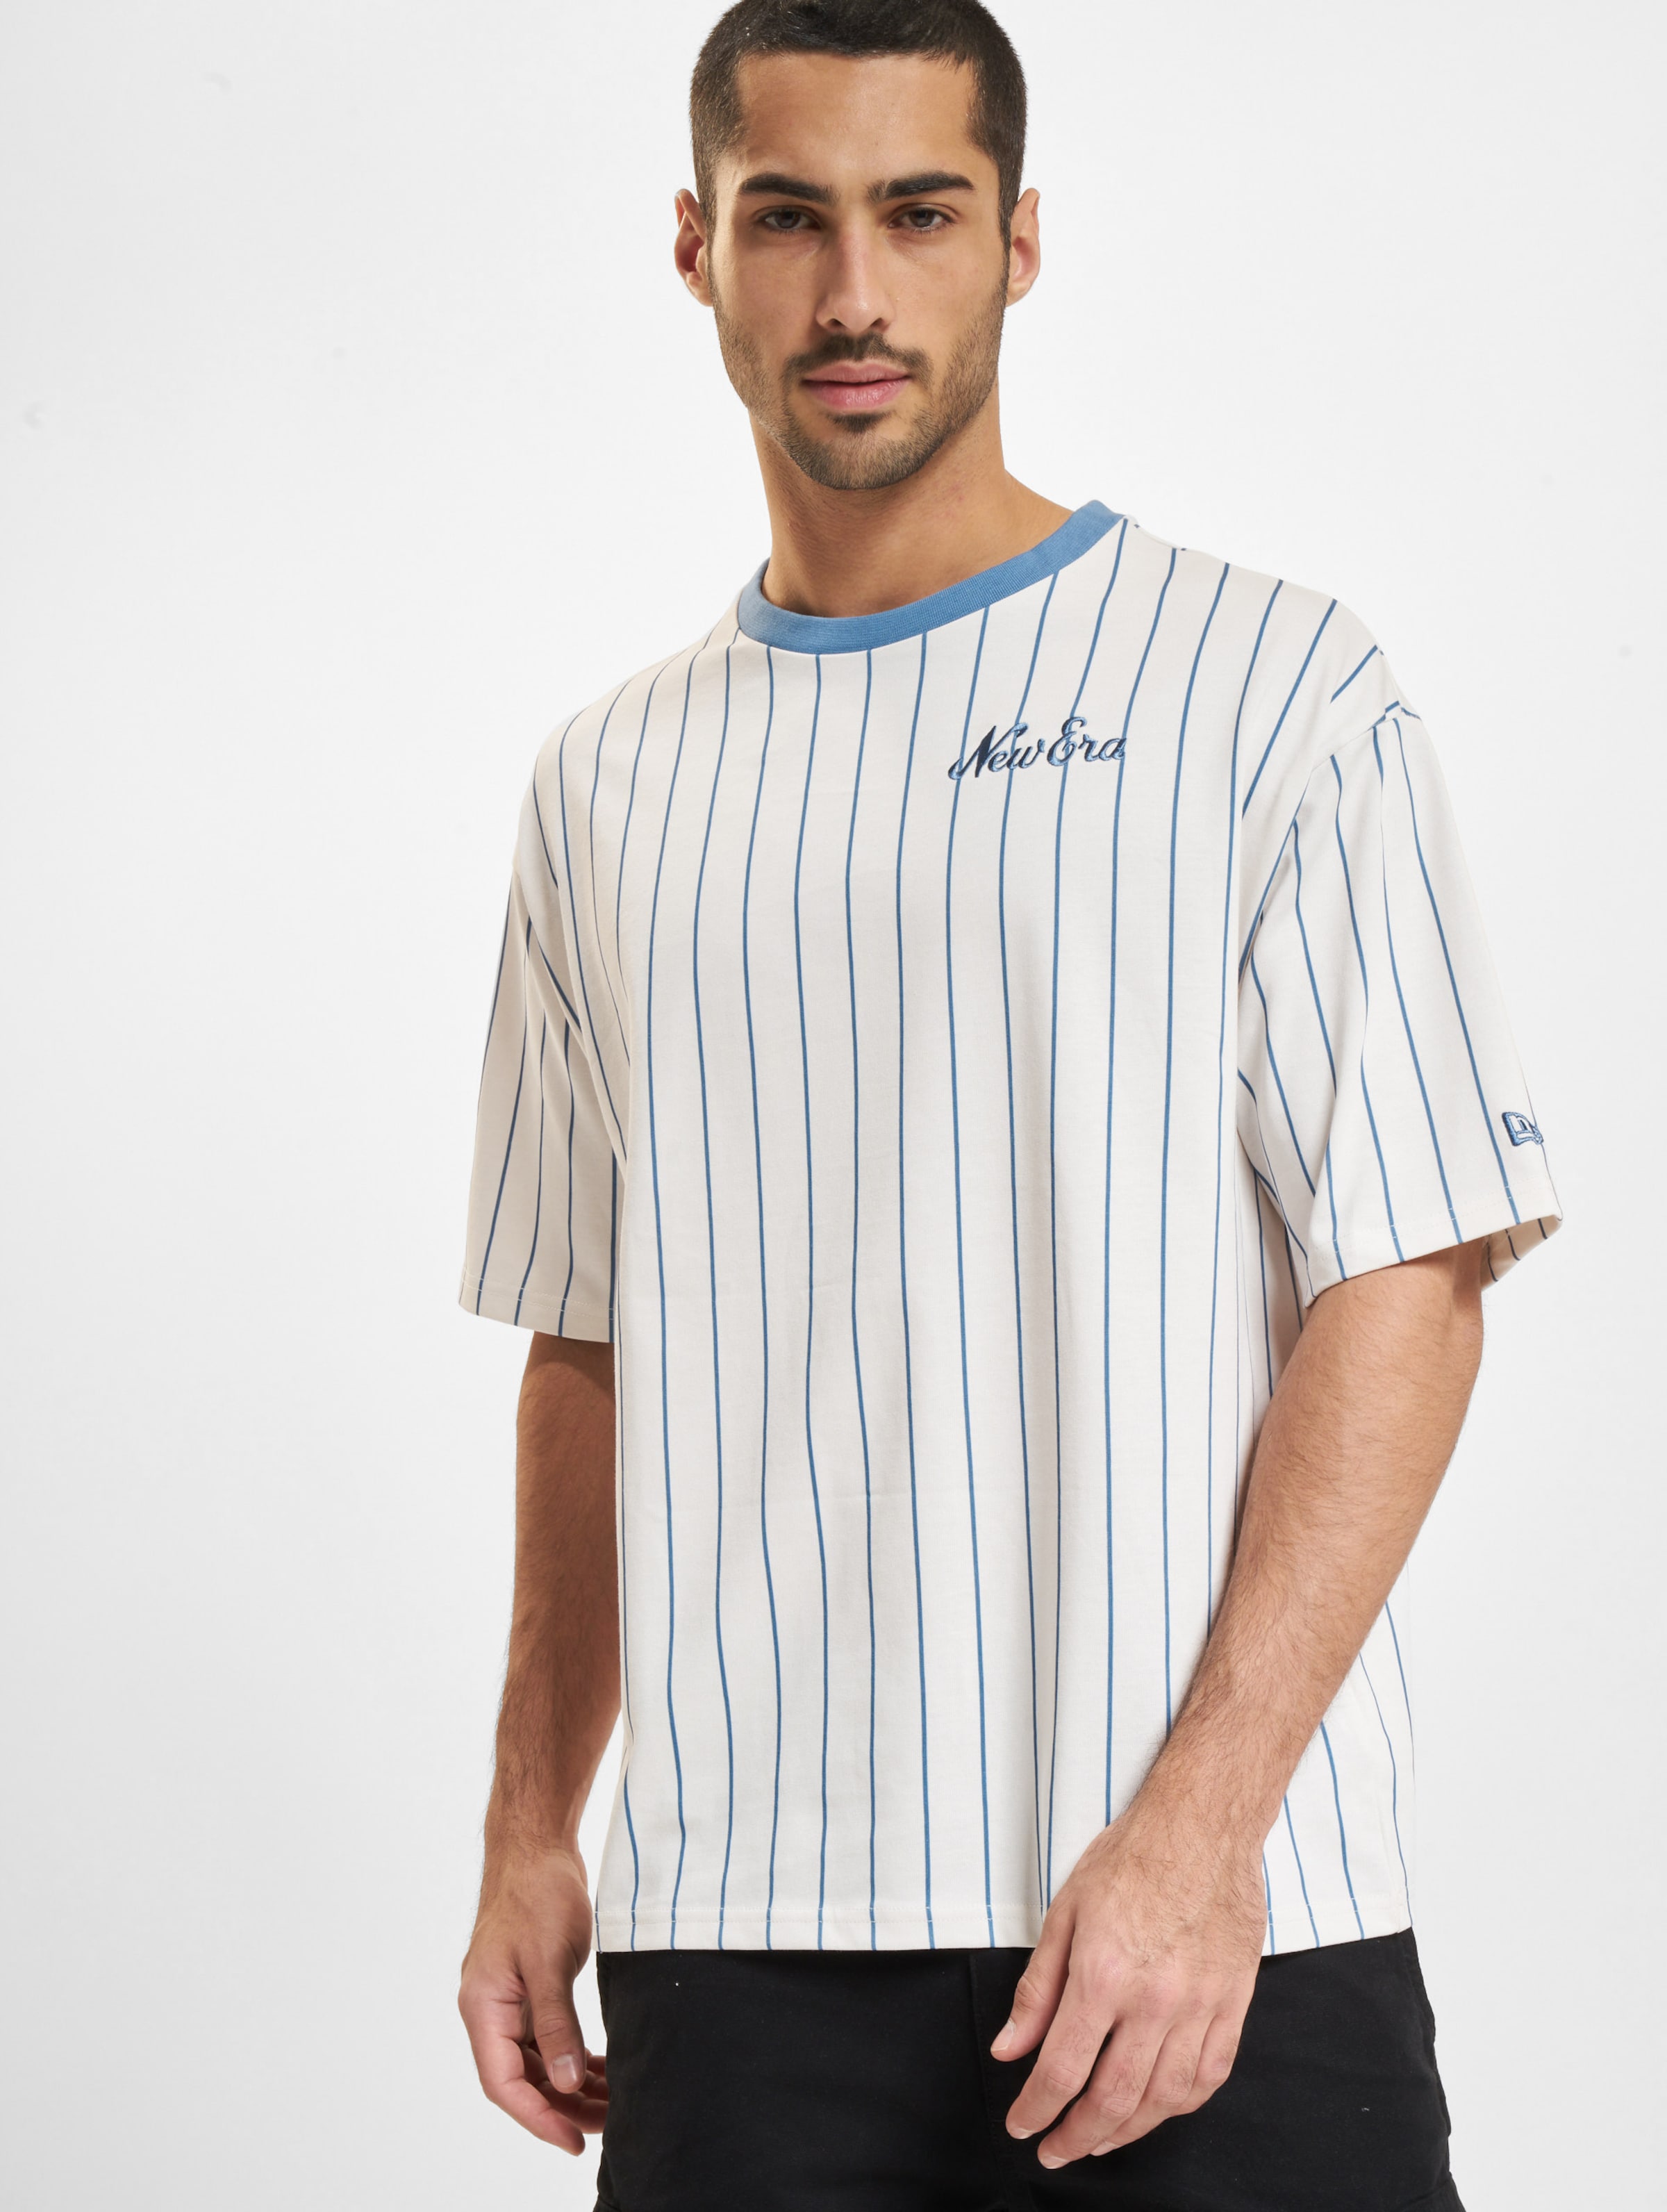 New Era Pinstripe OS T-Shirts Männer,Unisex op kleur wit, Maat S